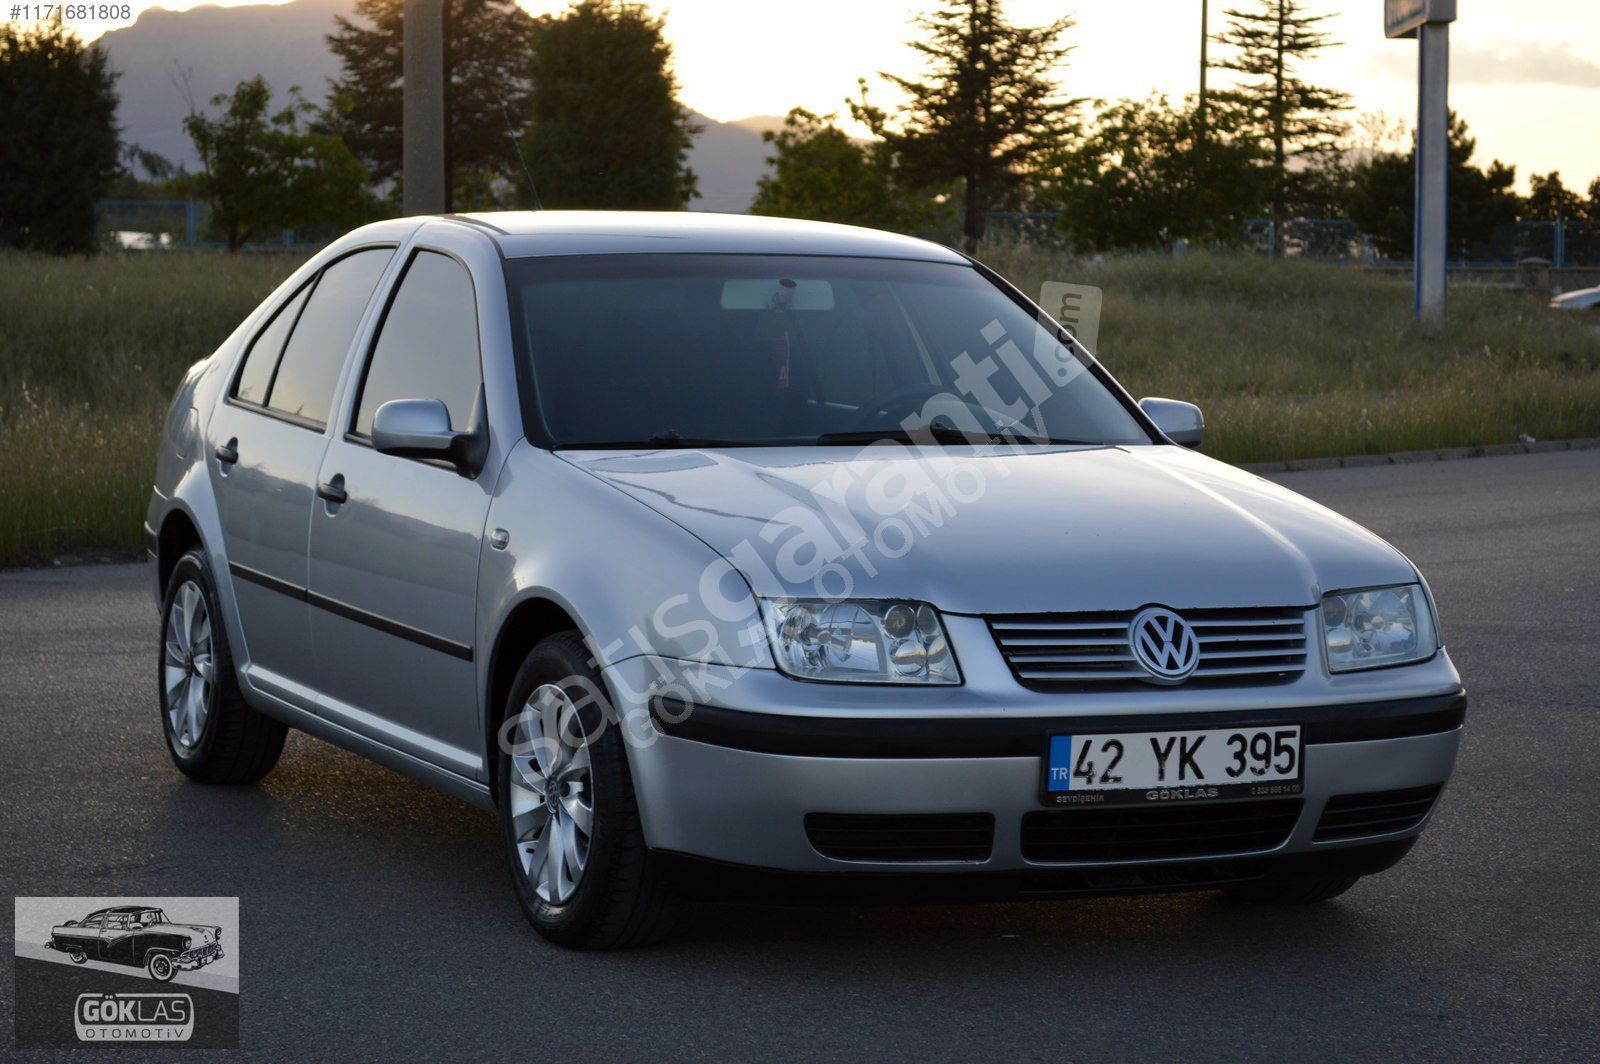 2002 Volkswagen Bora 1.6 16V - Bakımlı temiz araç - LPG'li